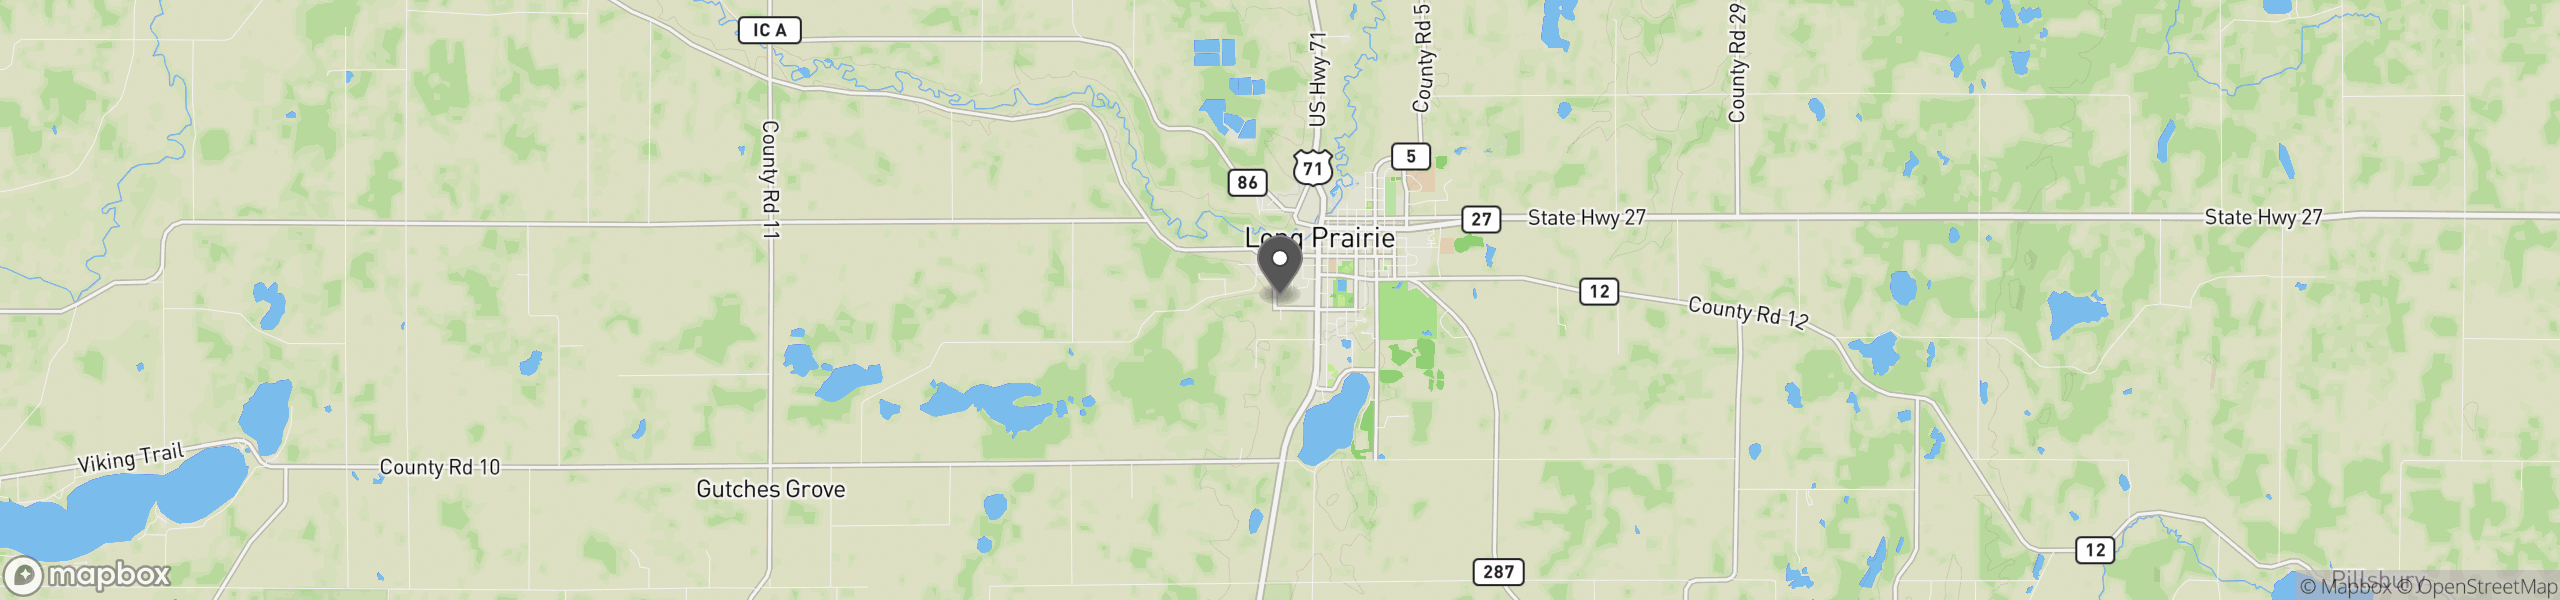 Long Prairie, MN 56347